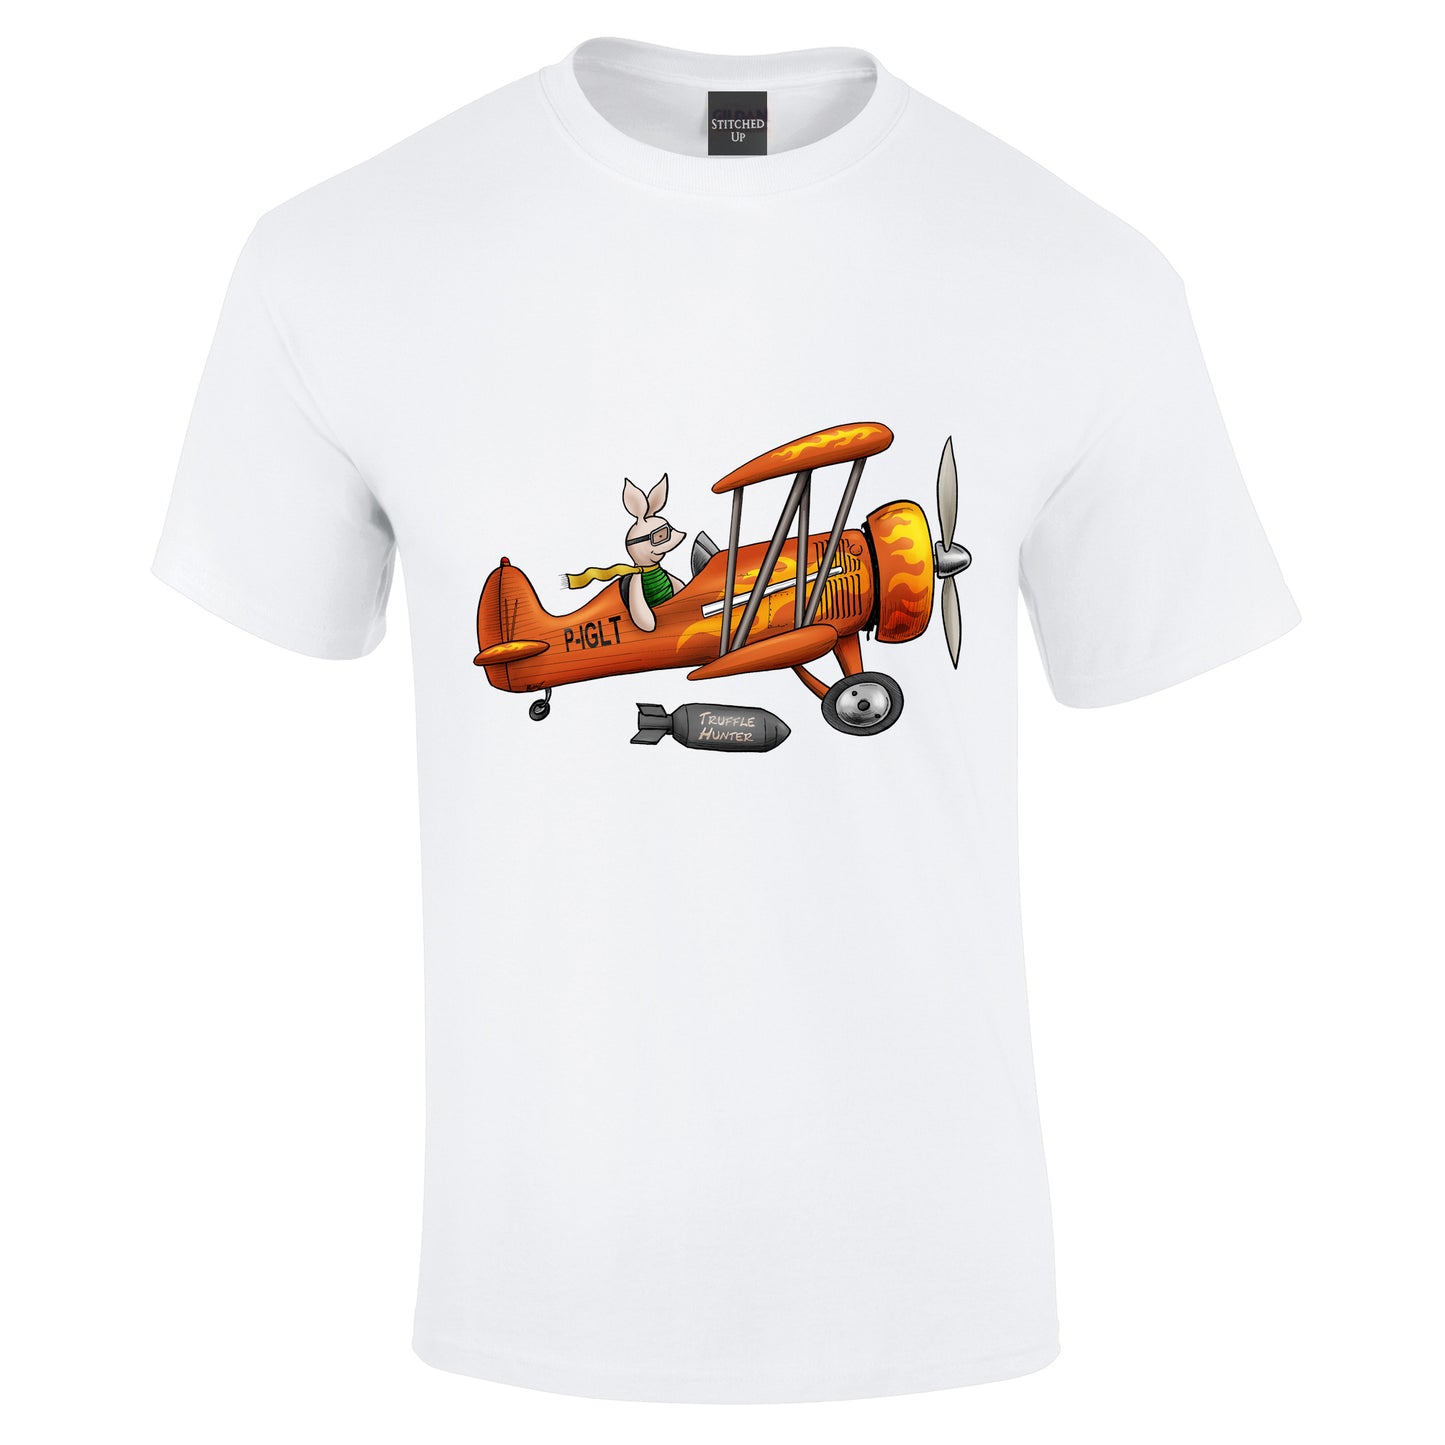 Piglet Aircraft T-Shirt